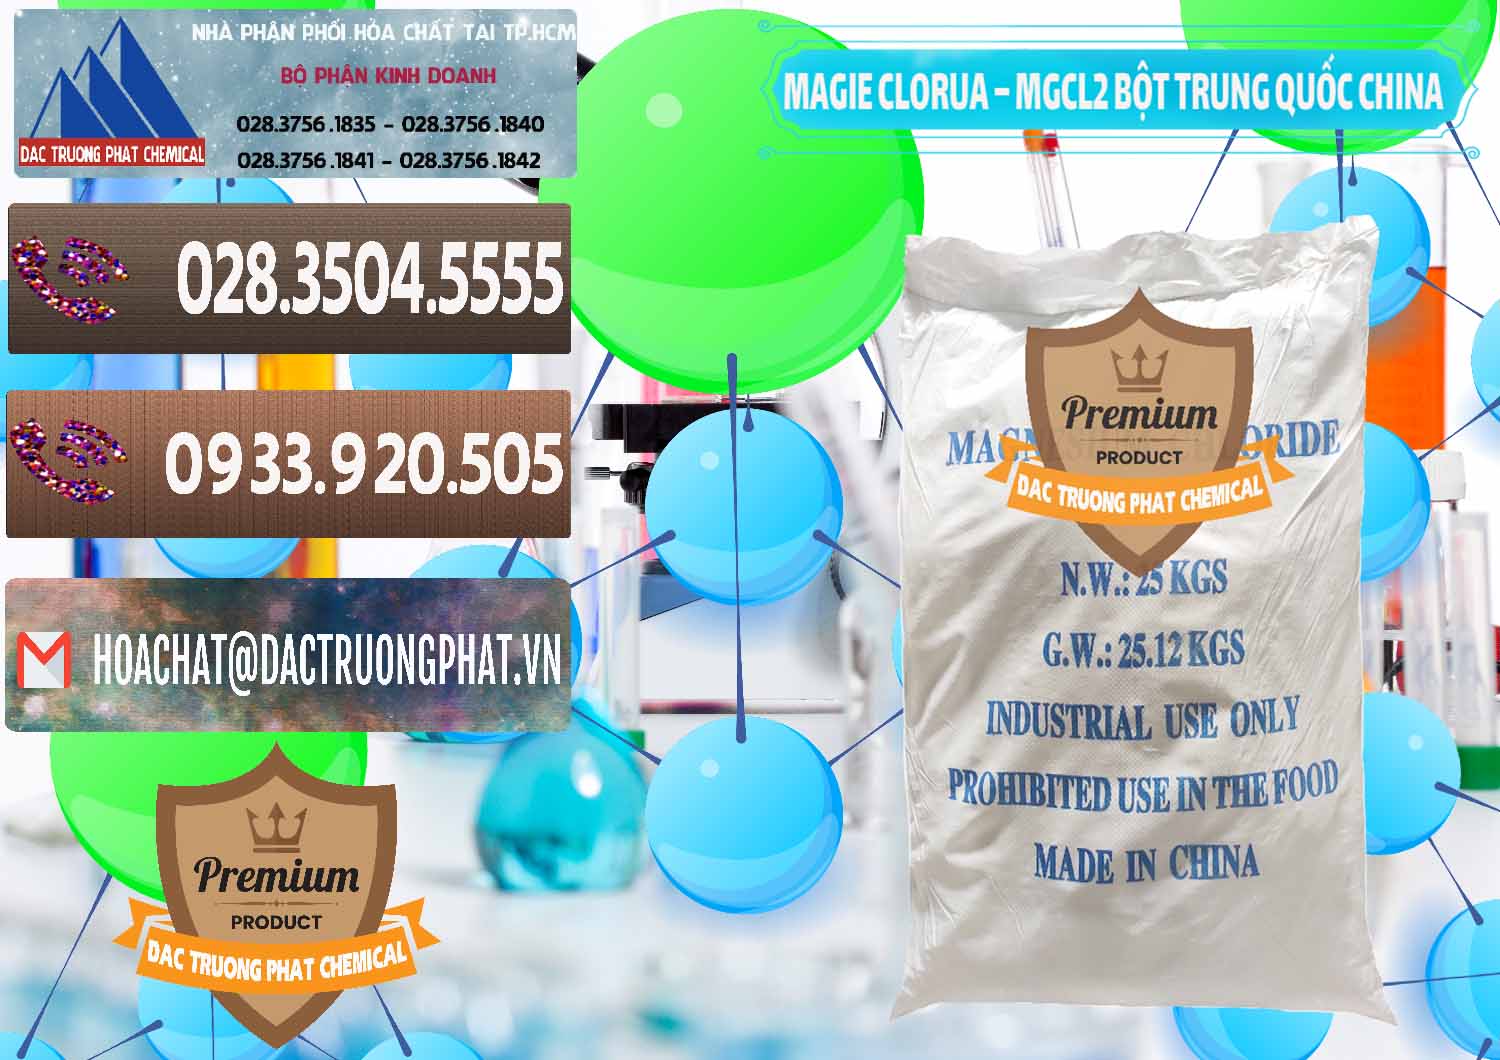 Bán _ phân phối Magie Clorua – MGCL2 96% Dạng Bột Bao Chữ Xanh Trung Quốc China - 0207 - Nơi chuyên cung cấp & nhập khẩu hóa chất tại TP.HCM - hoachatviet.net